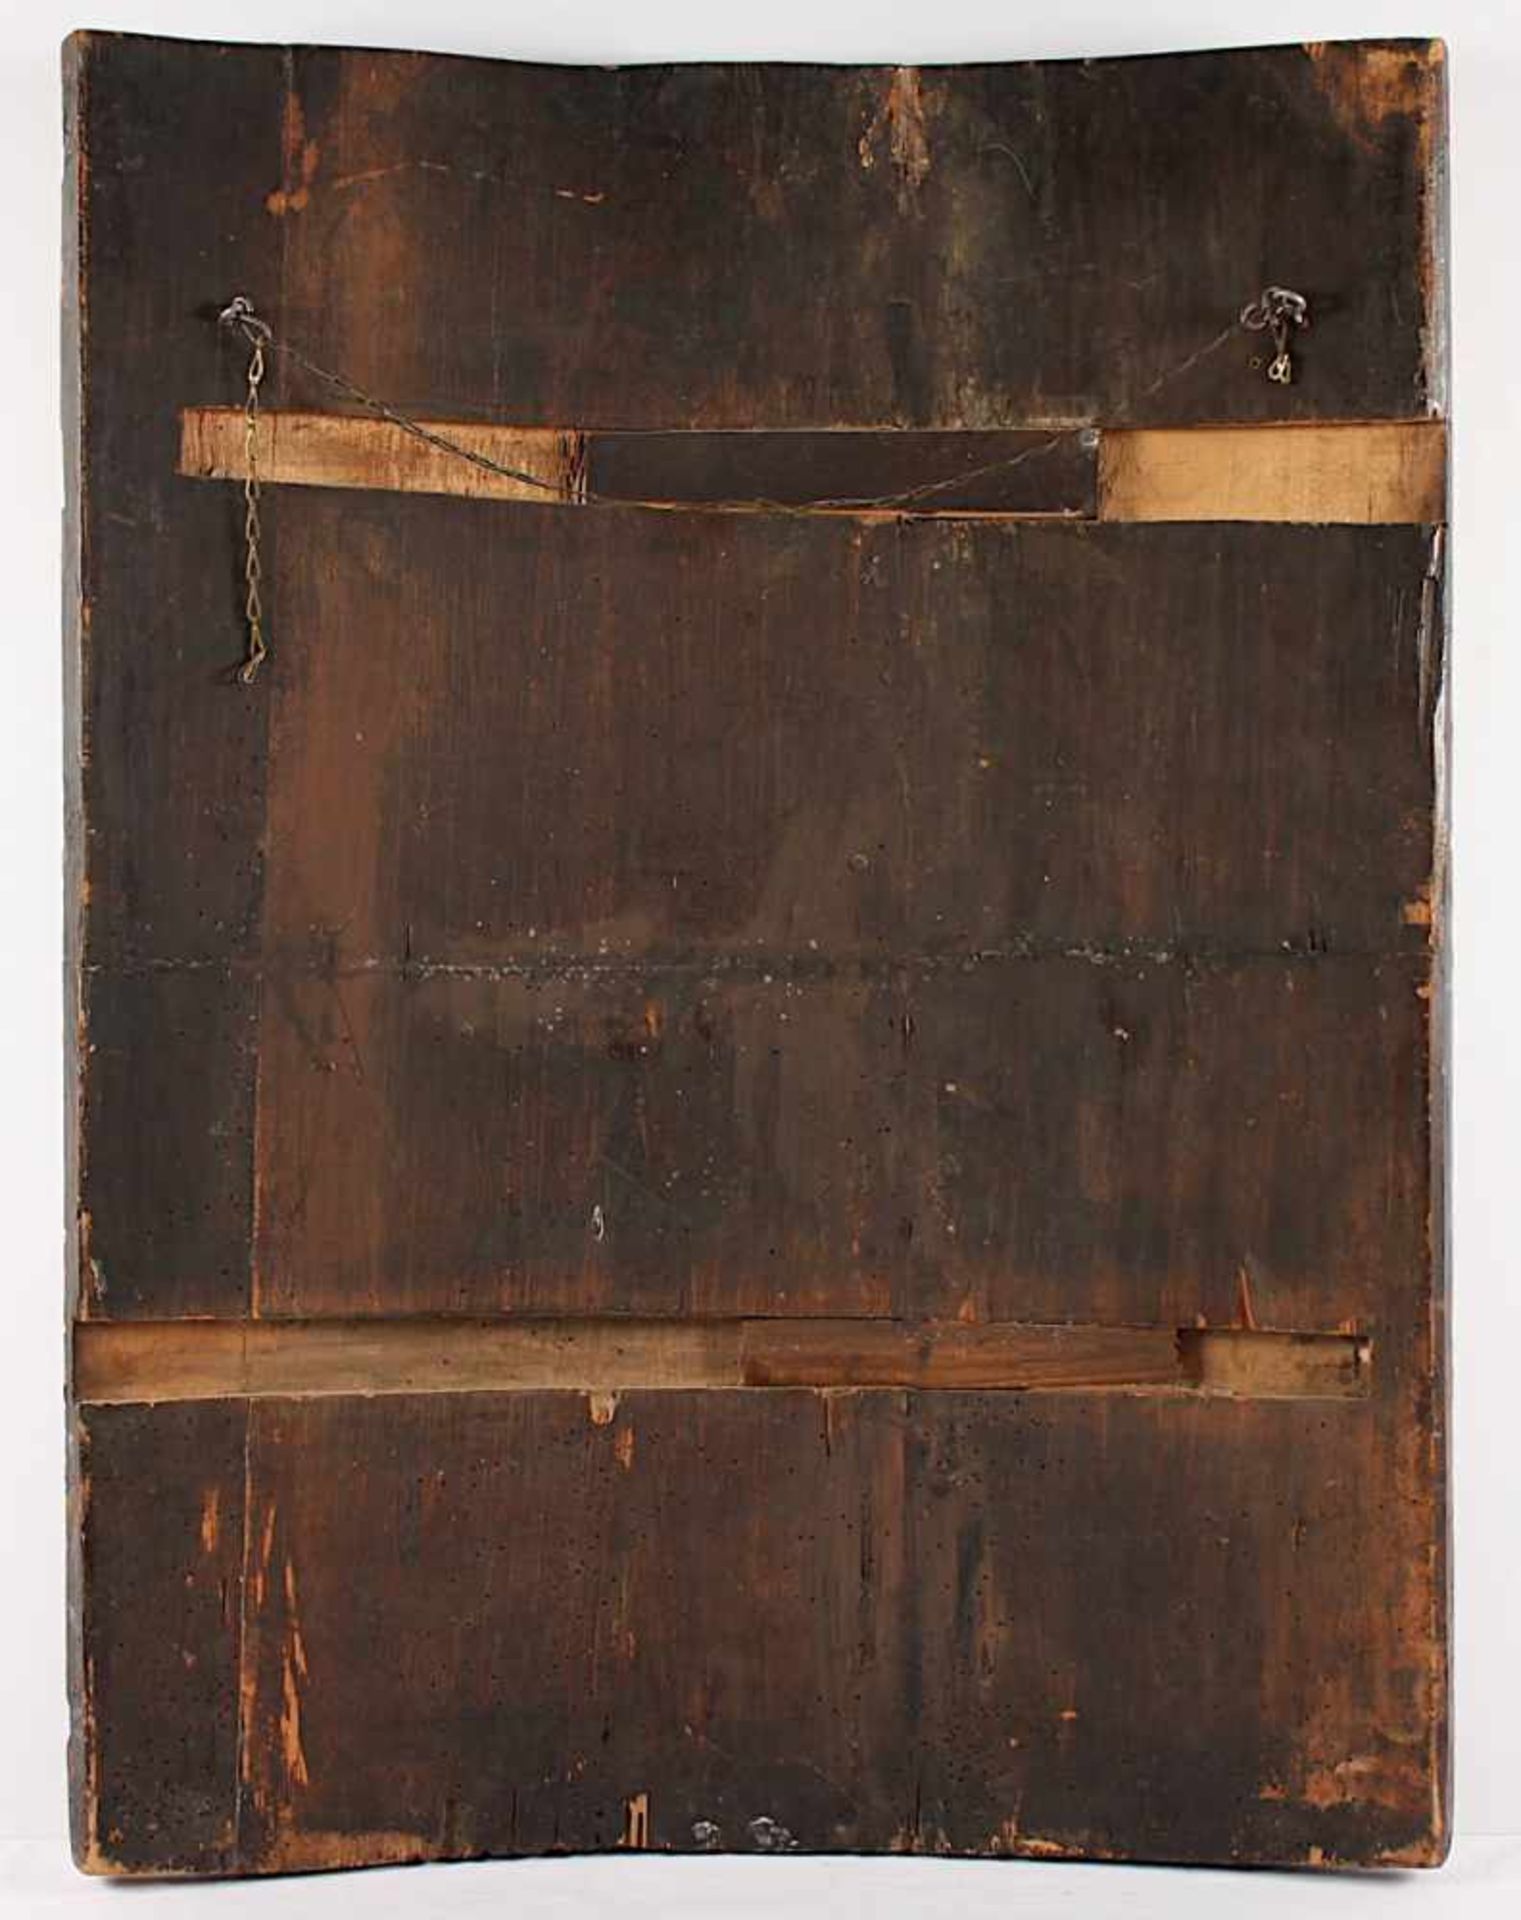 GROSSE IKONE, "Christus Pantokrator", Tempera/Holz, 87 x 66, besch., rest., RUSSLAND, wohl 16.Jh., - Bild 3 aus 3